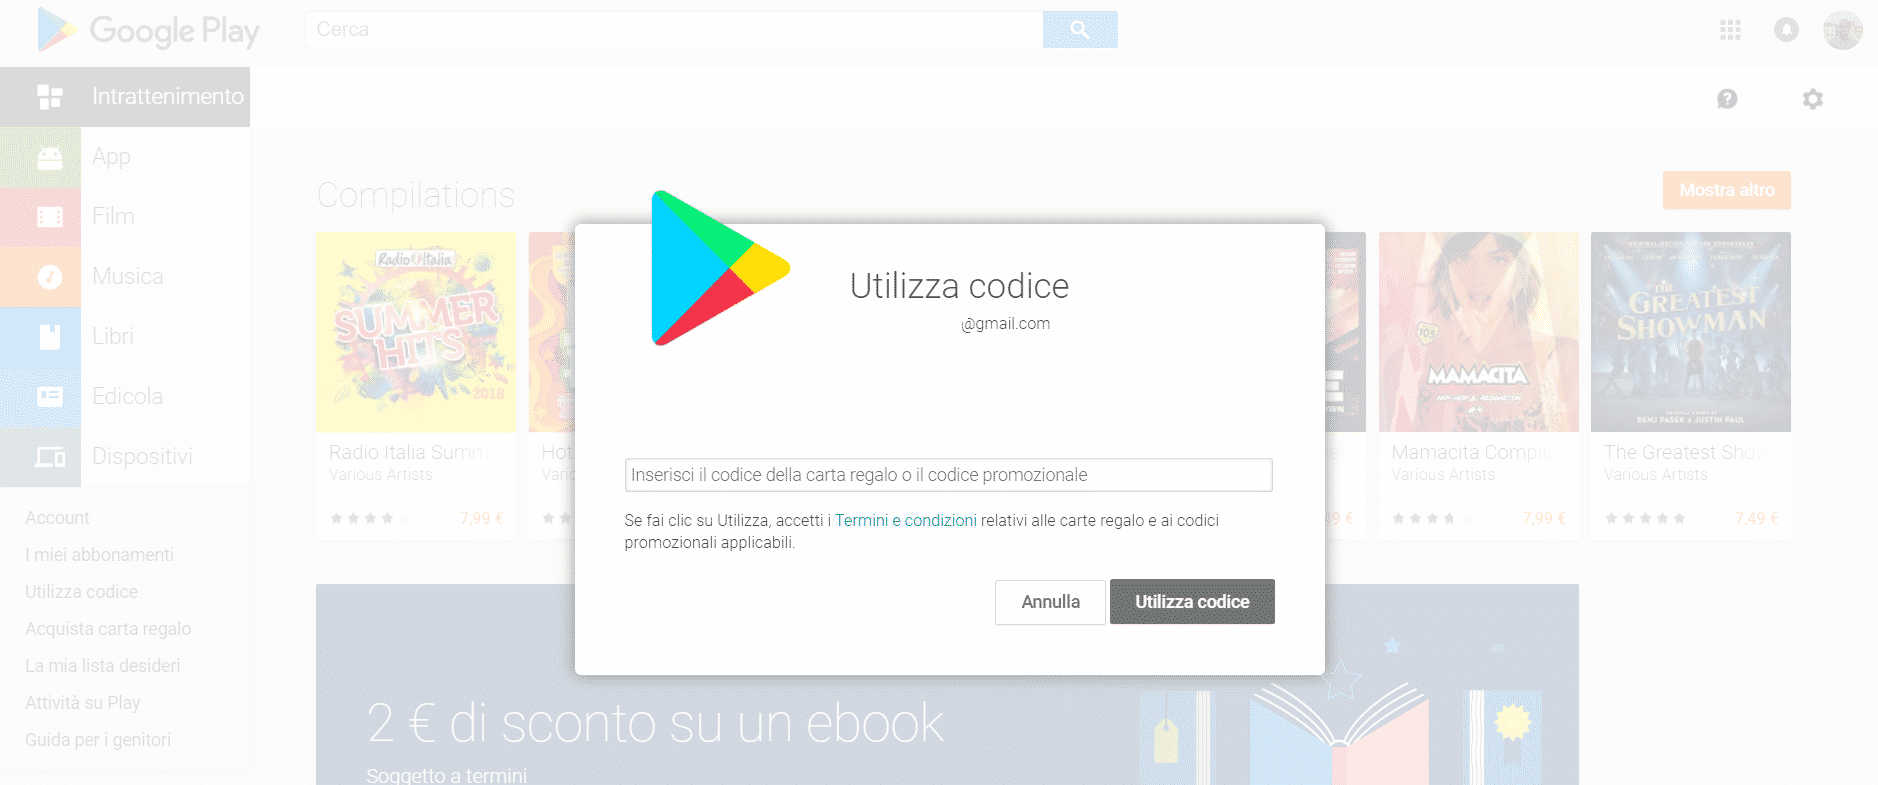 Codice promozionale Google Play su Android